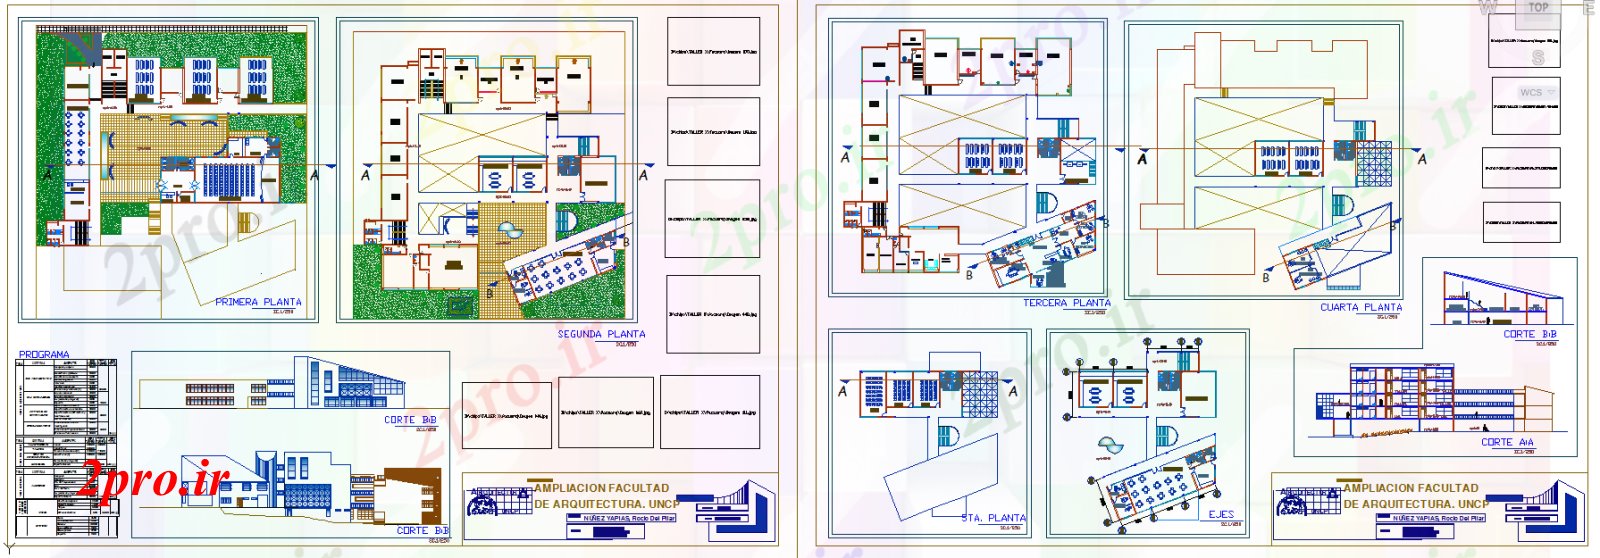 دانلود نقشه تئاتر چند منظوره - سینما - سالن کنفرانس - سالن همایشجزئیات پروژه سالن 56 در 60 متر (کد51752)